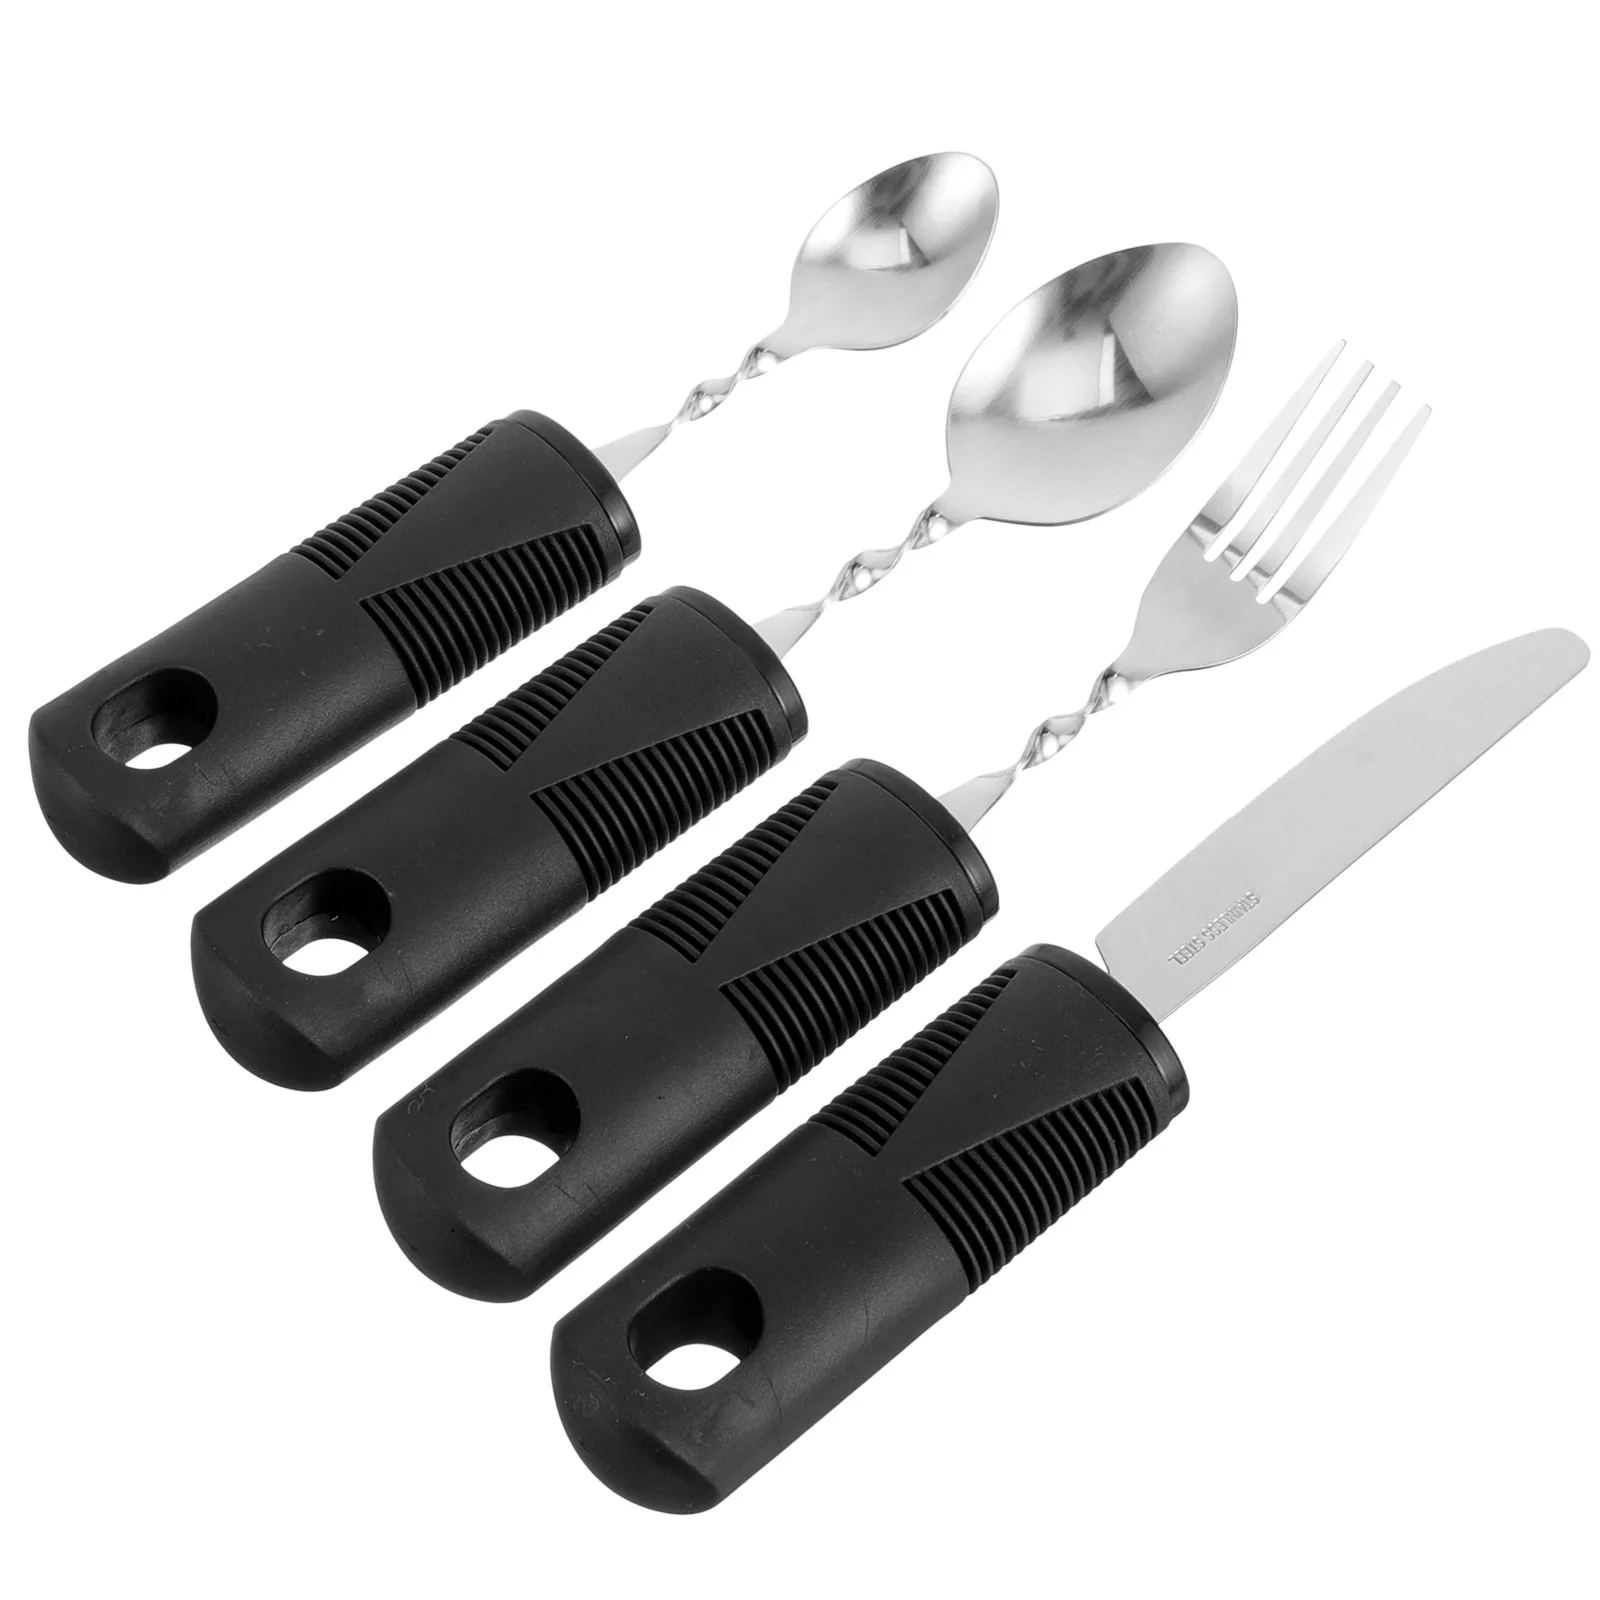 

Utensils Spoons Fork Weighted Parkinsons Silverware Steel Eating Flatware Set Stainless Dinner Spoon Adaptive Up Built Tableware